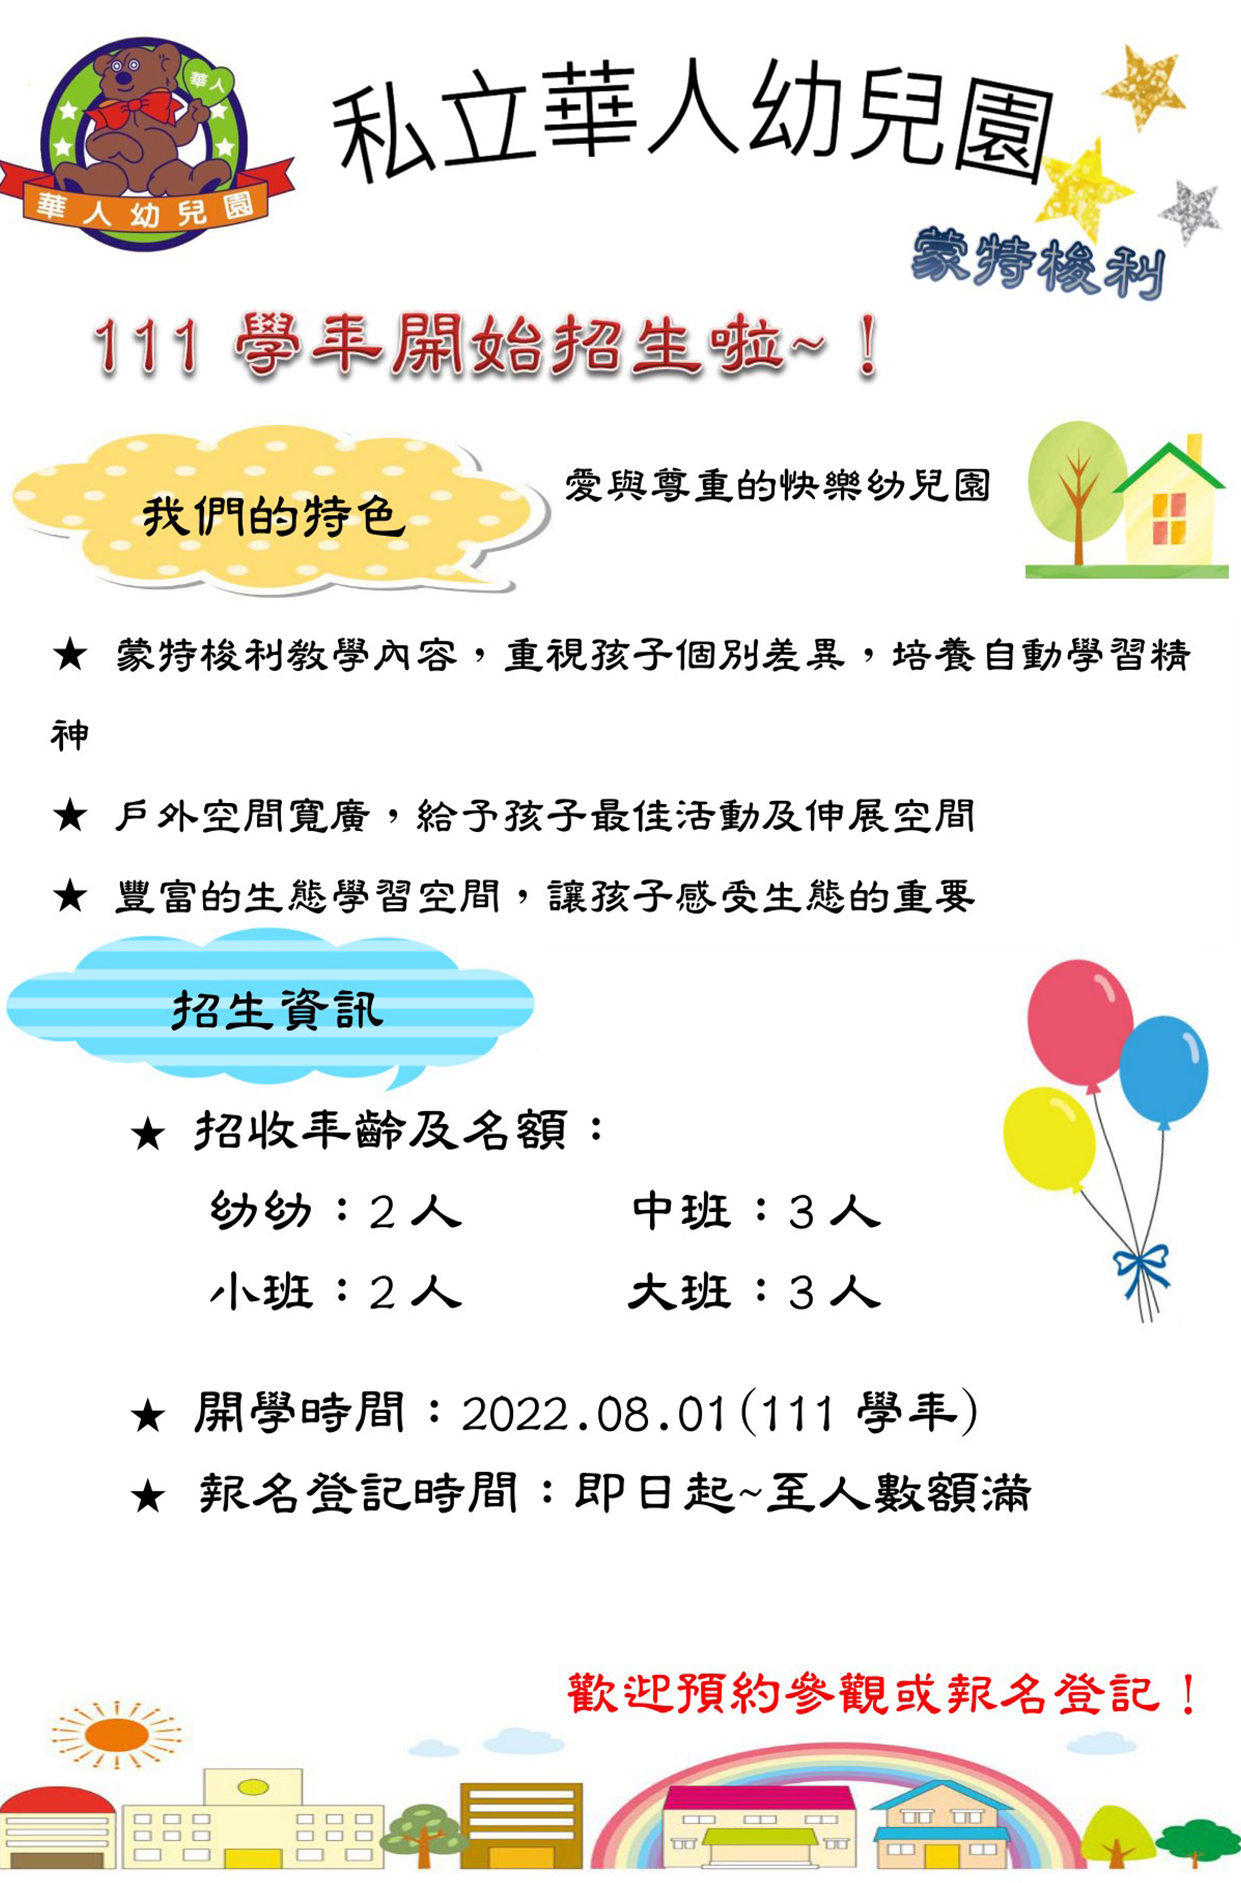 私立華人幼兒園招生資訊